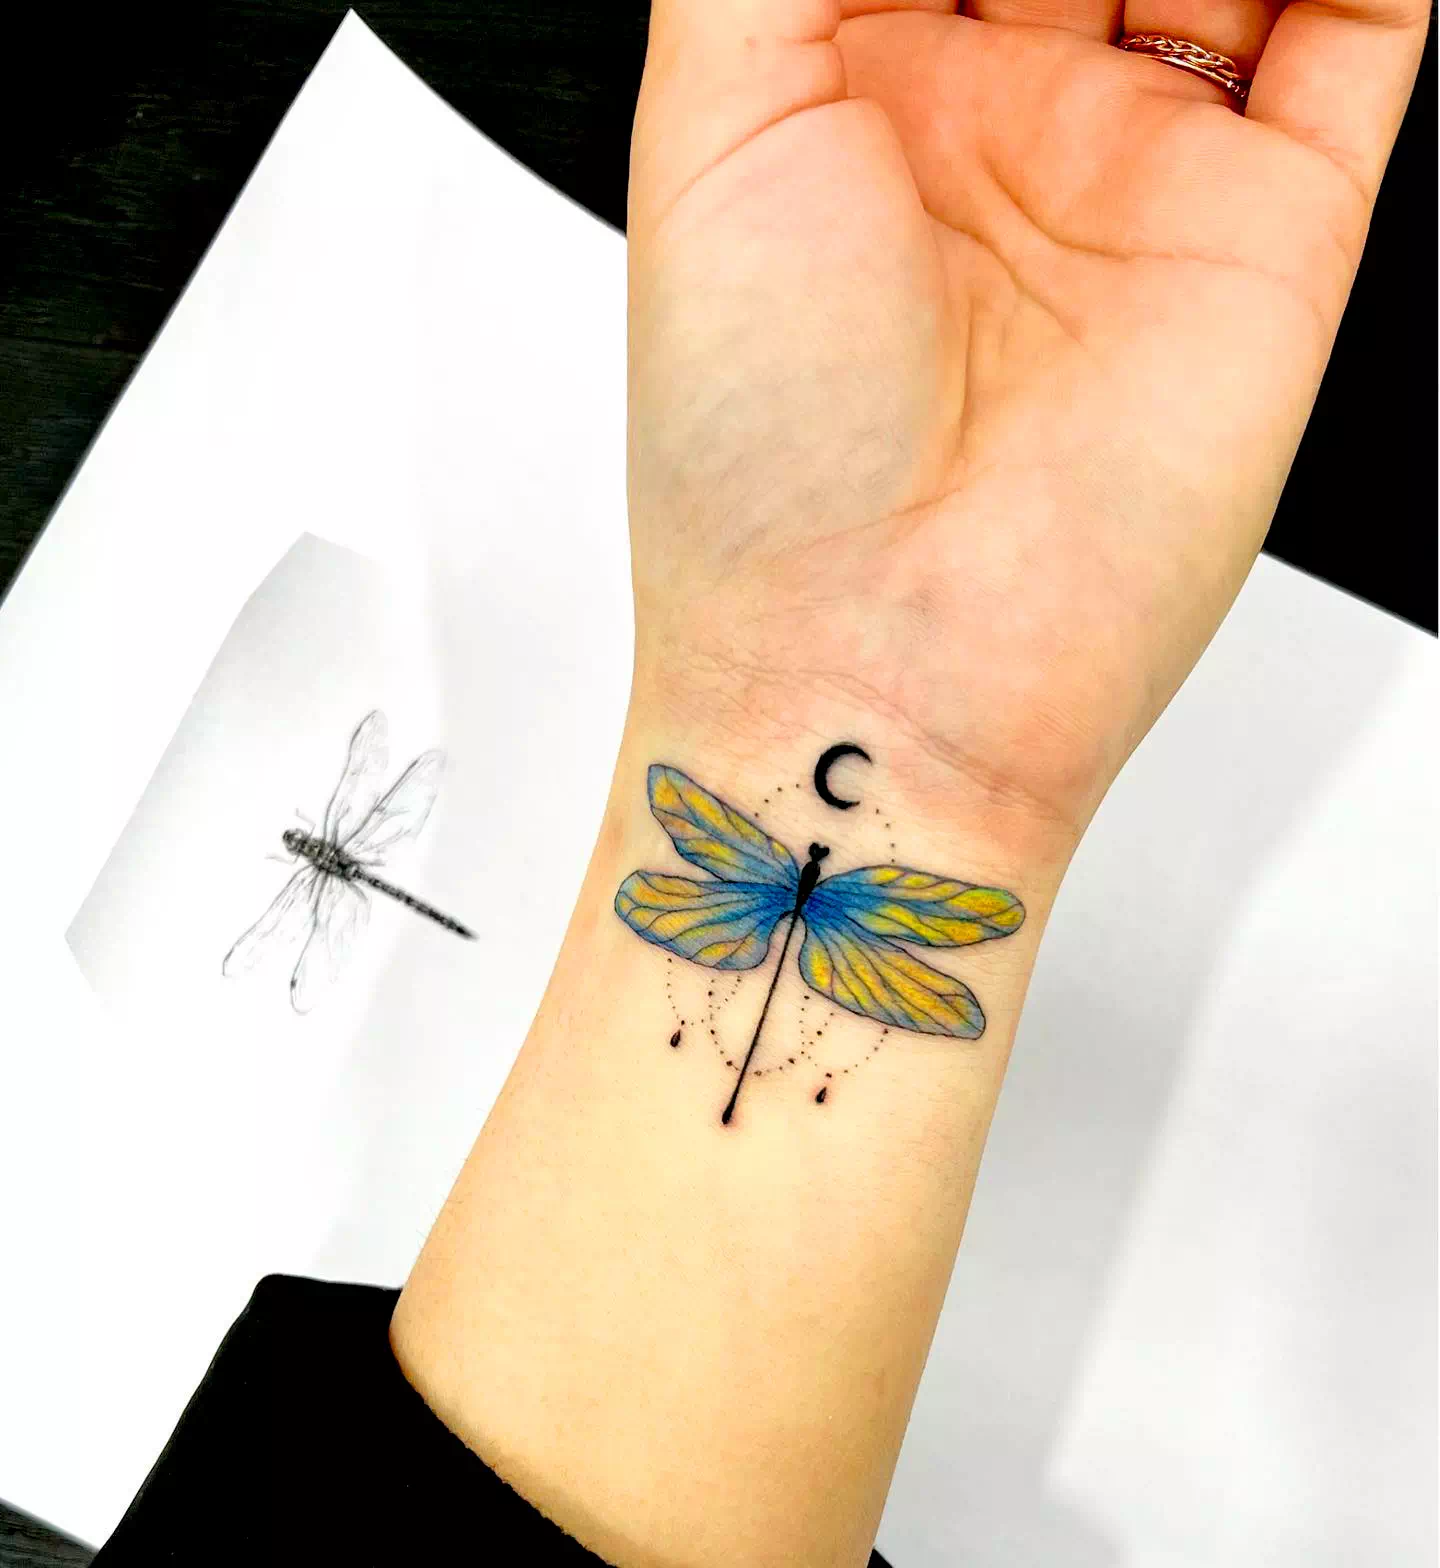 Diseño del tatuaje de la libélula Impresión amarilla